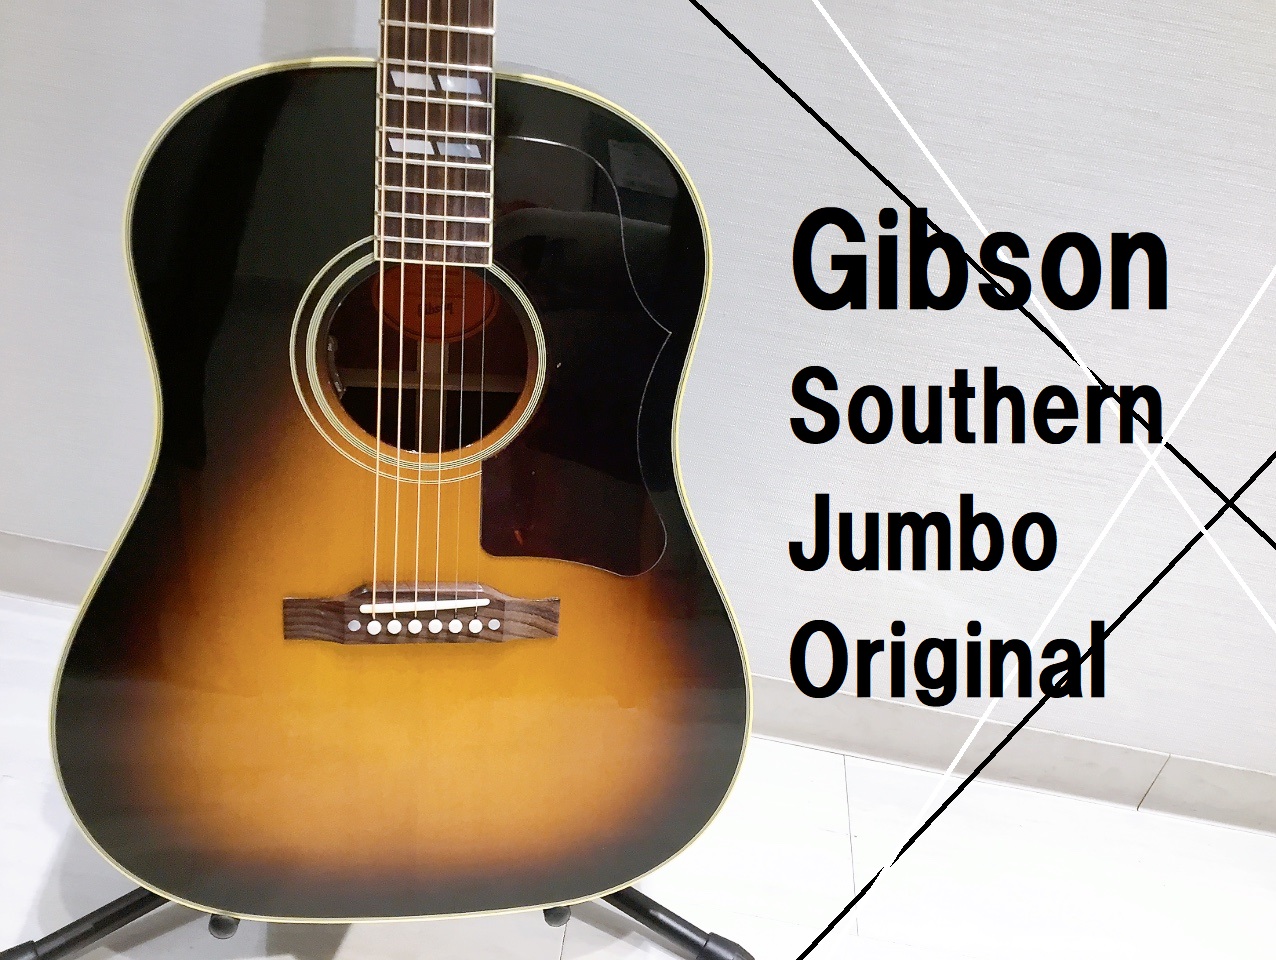 島村楽器パークプレイス大分店に、Gibson(ギブソン)のアコースティックギター、「Southern Jumbo Original」VSカラーが入荷致しました！ Southern Jumboは、カントリーのリズムギターやアコースティック・ブルーズのリードプレイを奏でるのに恰好のモデルとして定評があり […]